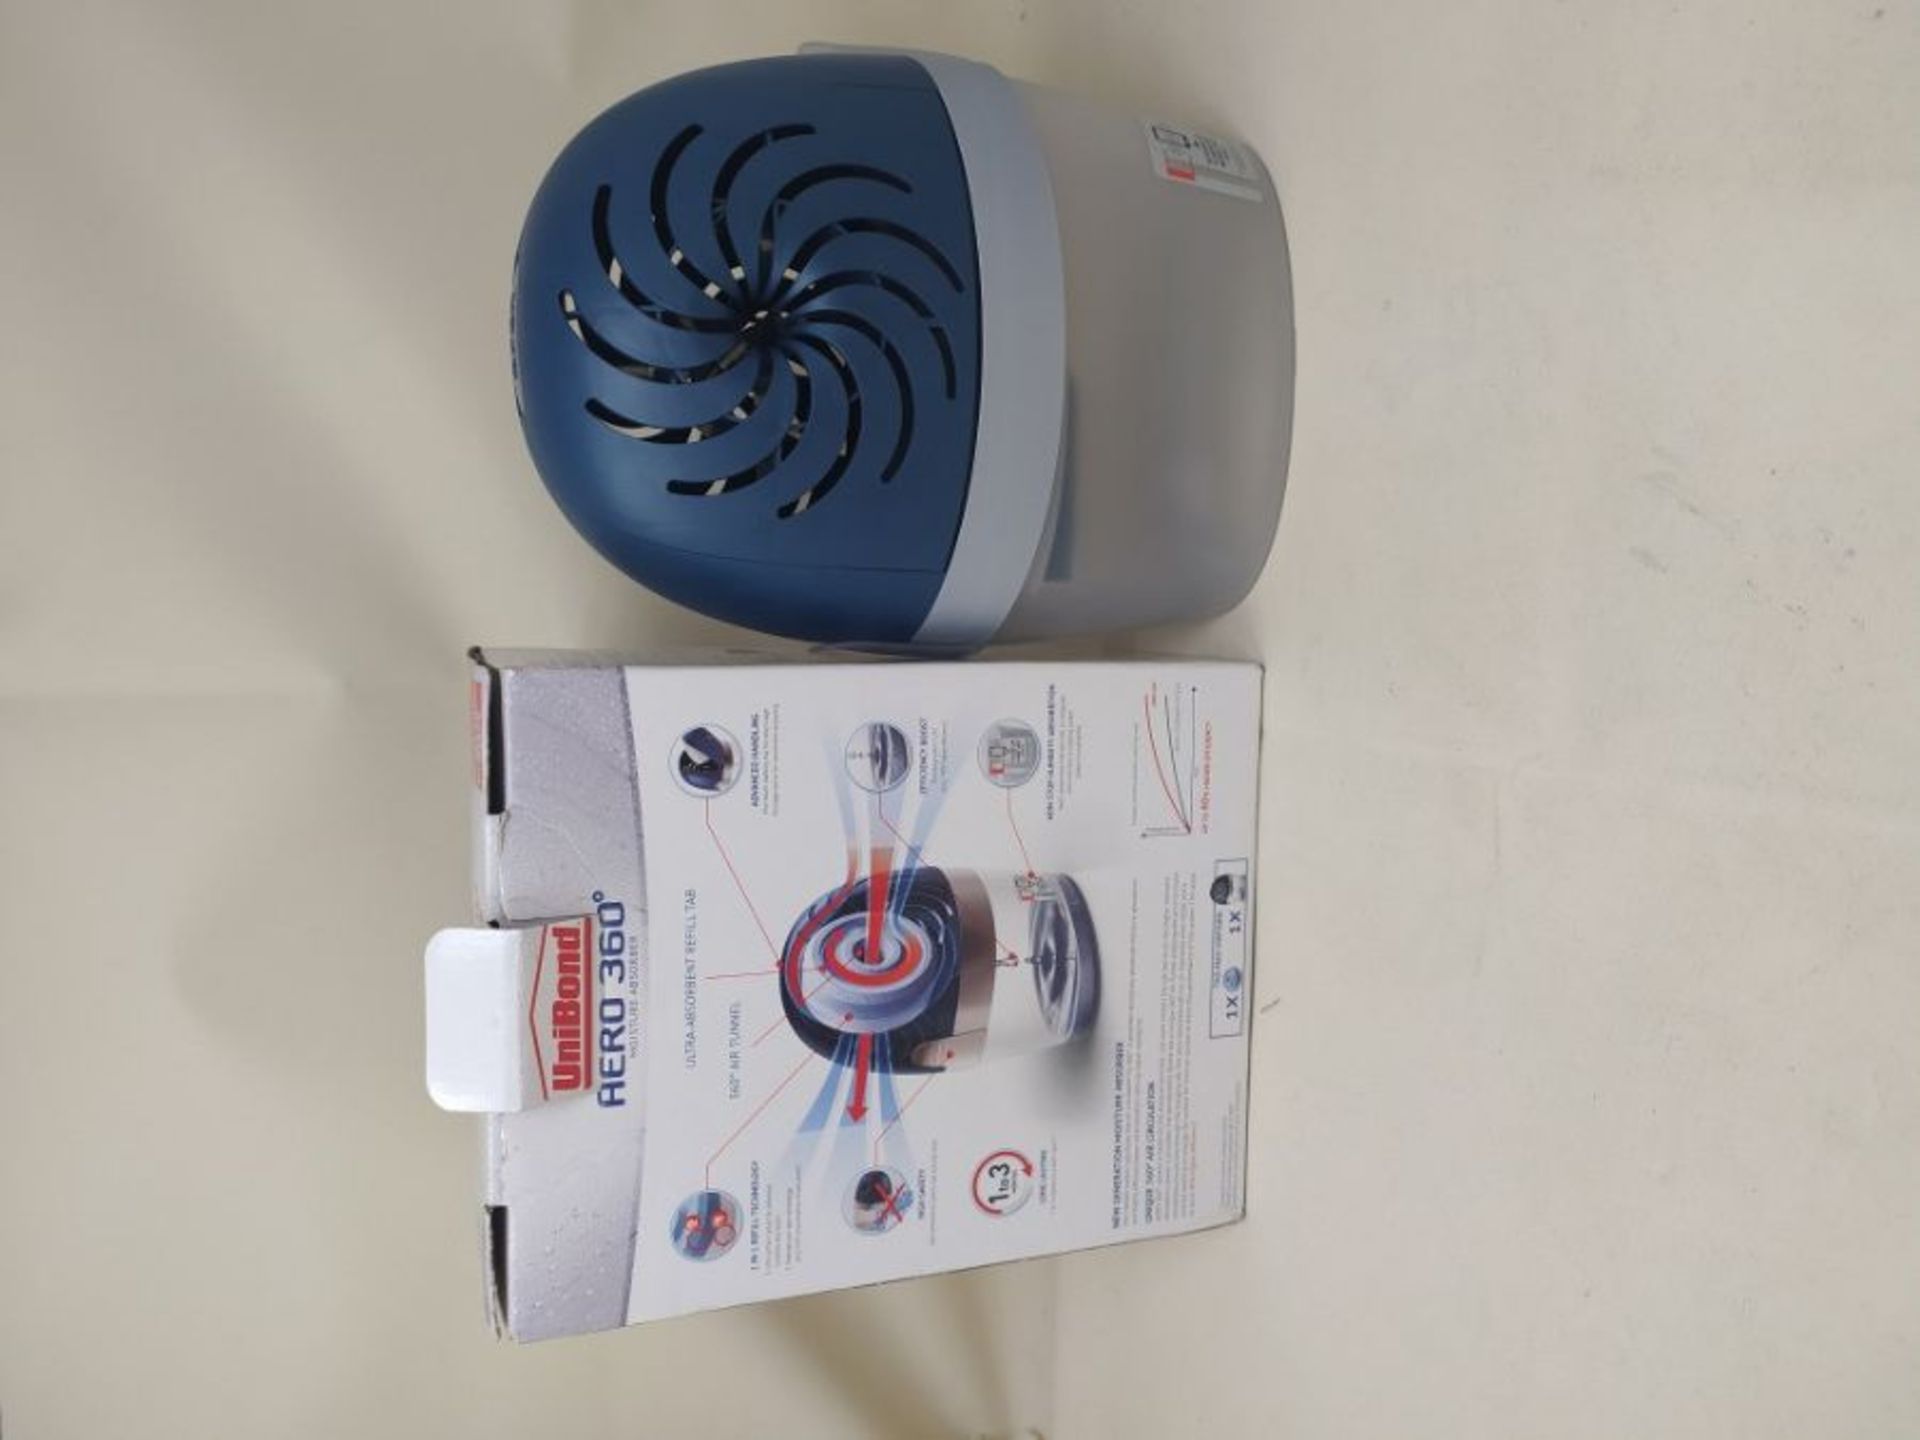 UniBond AERO 360° E-Connect Moisture Absorber, Ultra-Absorbent Dehumidifier, Condensa - Image 2 of 2